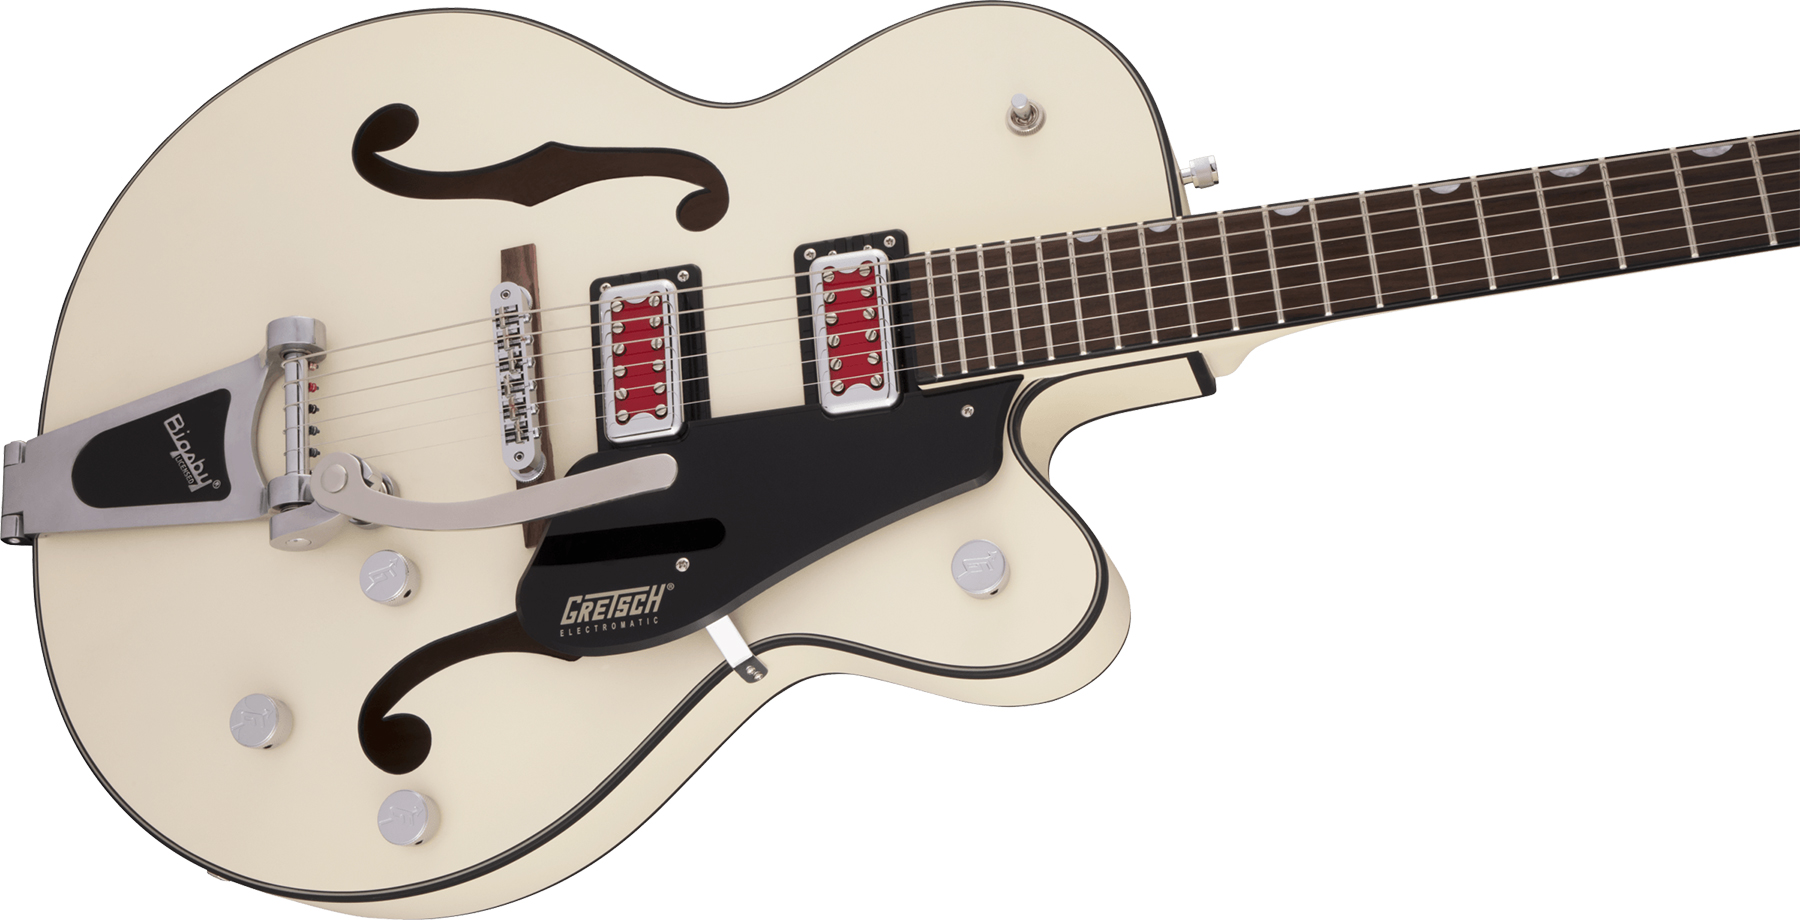 Gretsch G5410t Rat Rod Bigsby Electromatic Hollow Body 2h Trem Rw - Matte Vintage White - Guitare Électrique 1/2 Caisse - Variation 3